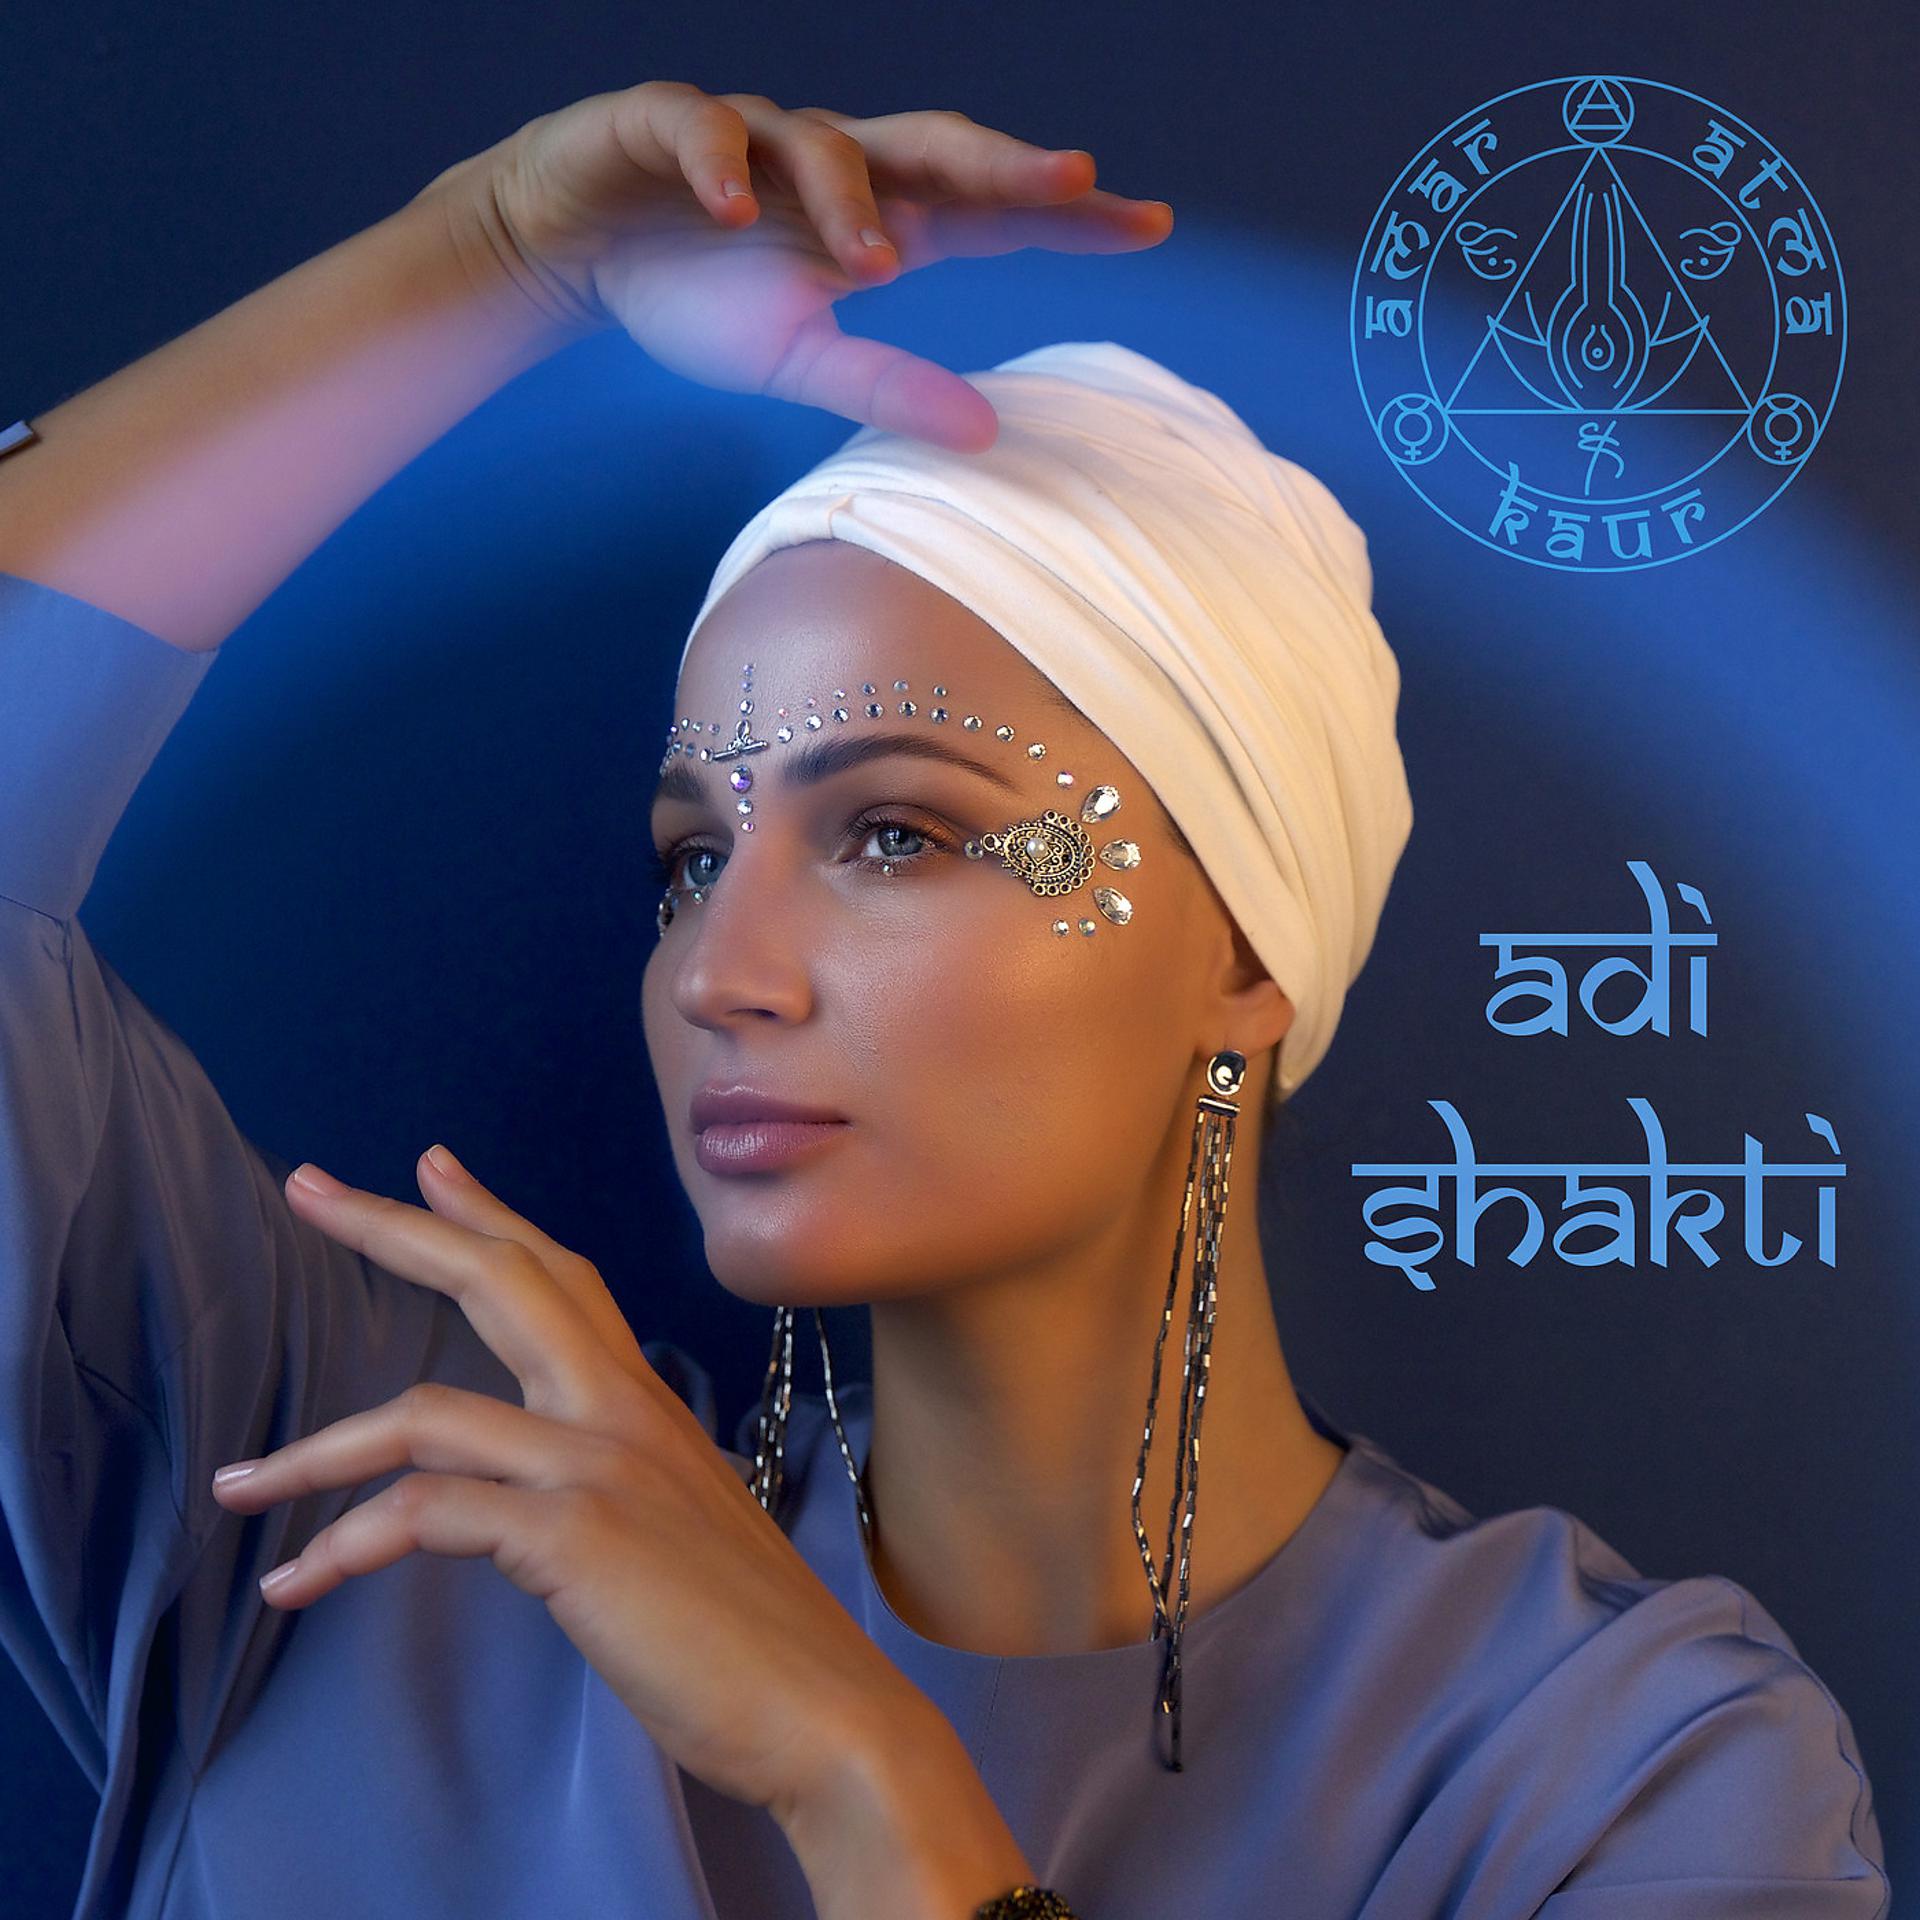 Постер альбома Adi Shakti